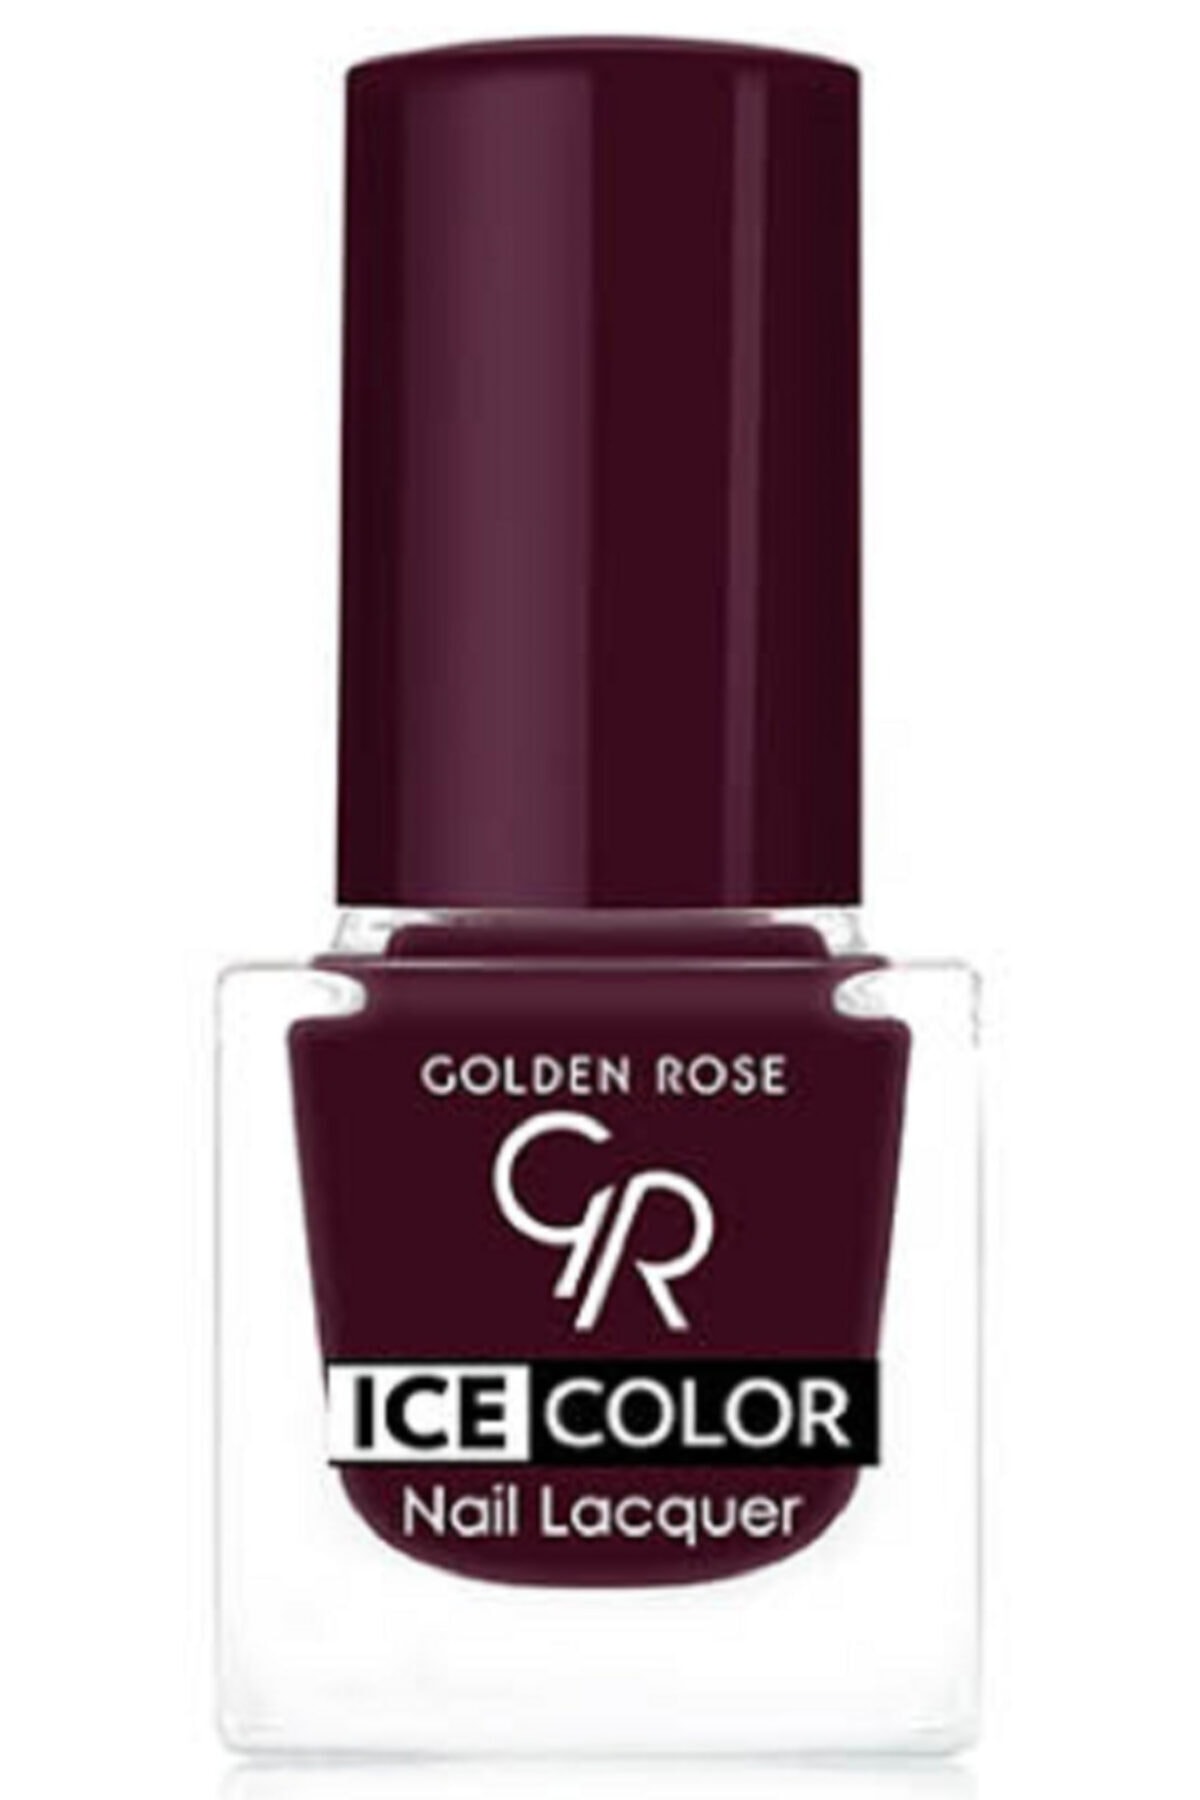 لاک ناخن یخی آیس چیک ICE شماره 181 رنگ سبز نفتی گلدن رز Golden Rose